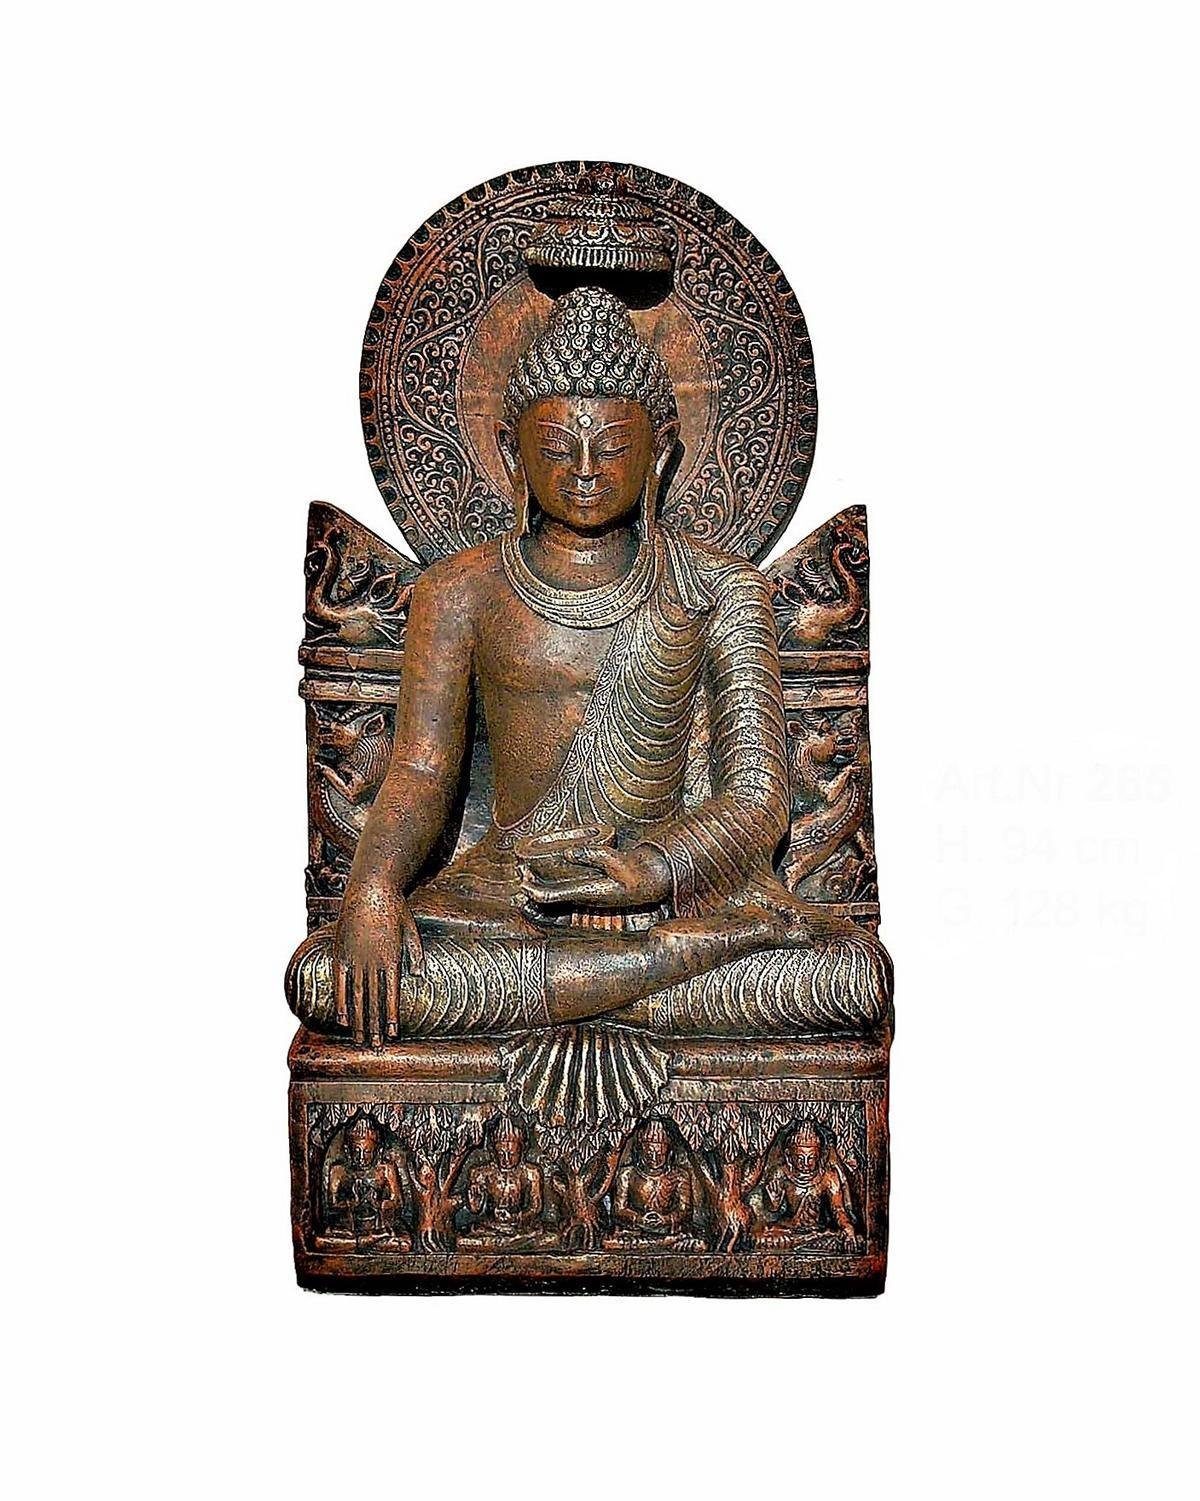 Antikes Wohndesign Gartenfigur Sitzender Thai Buddha Gottheit Statue Gartenfigur Feng Shui Bronze